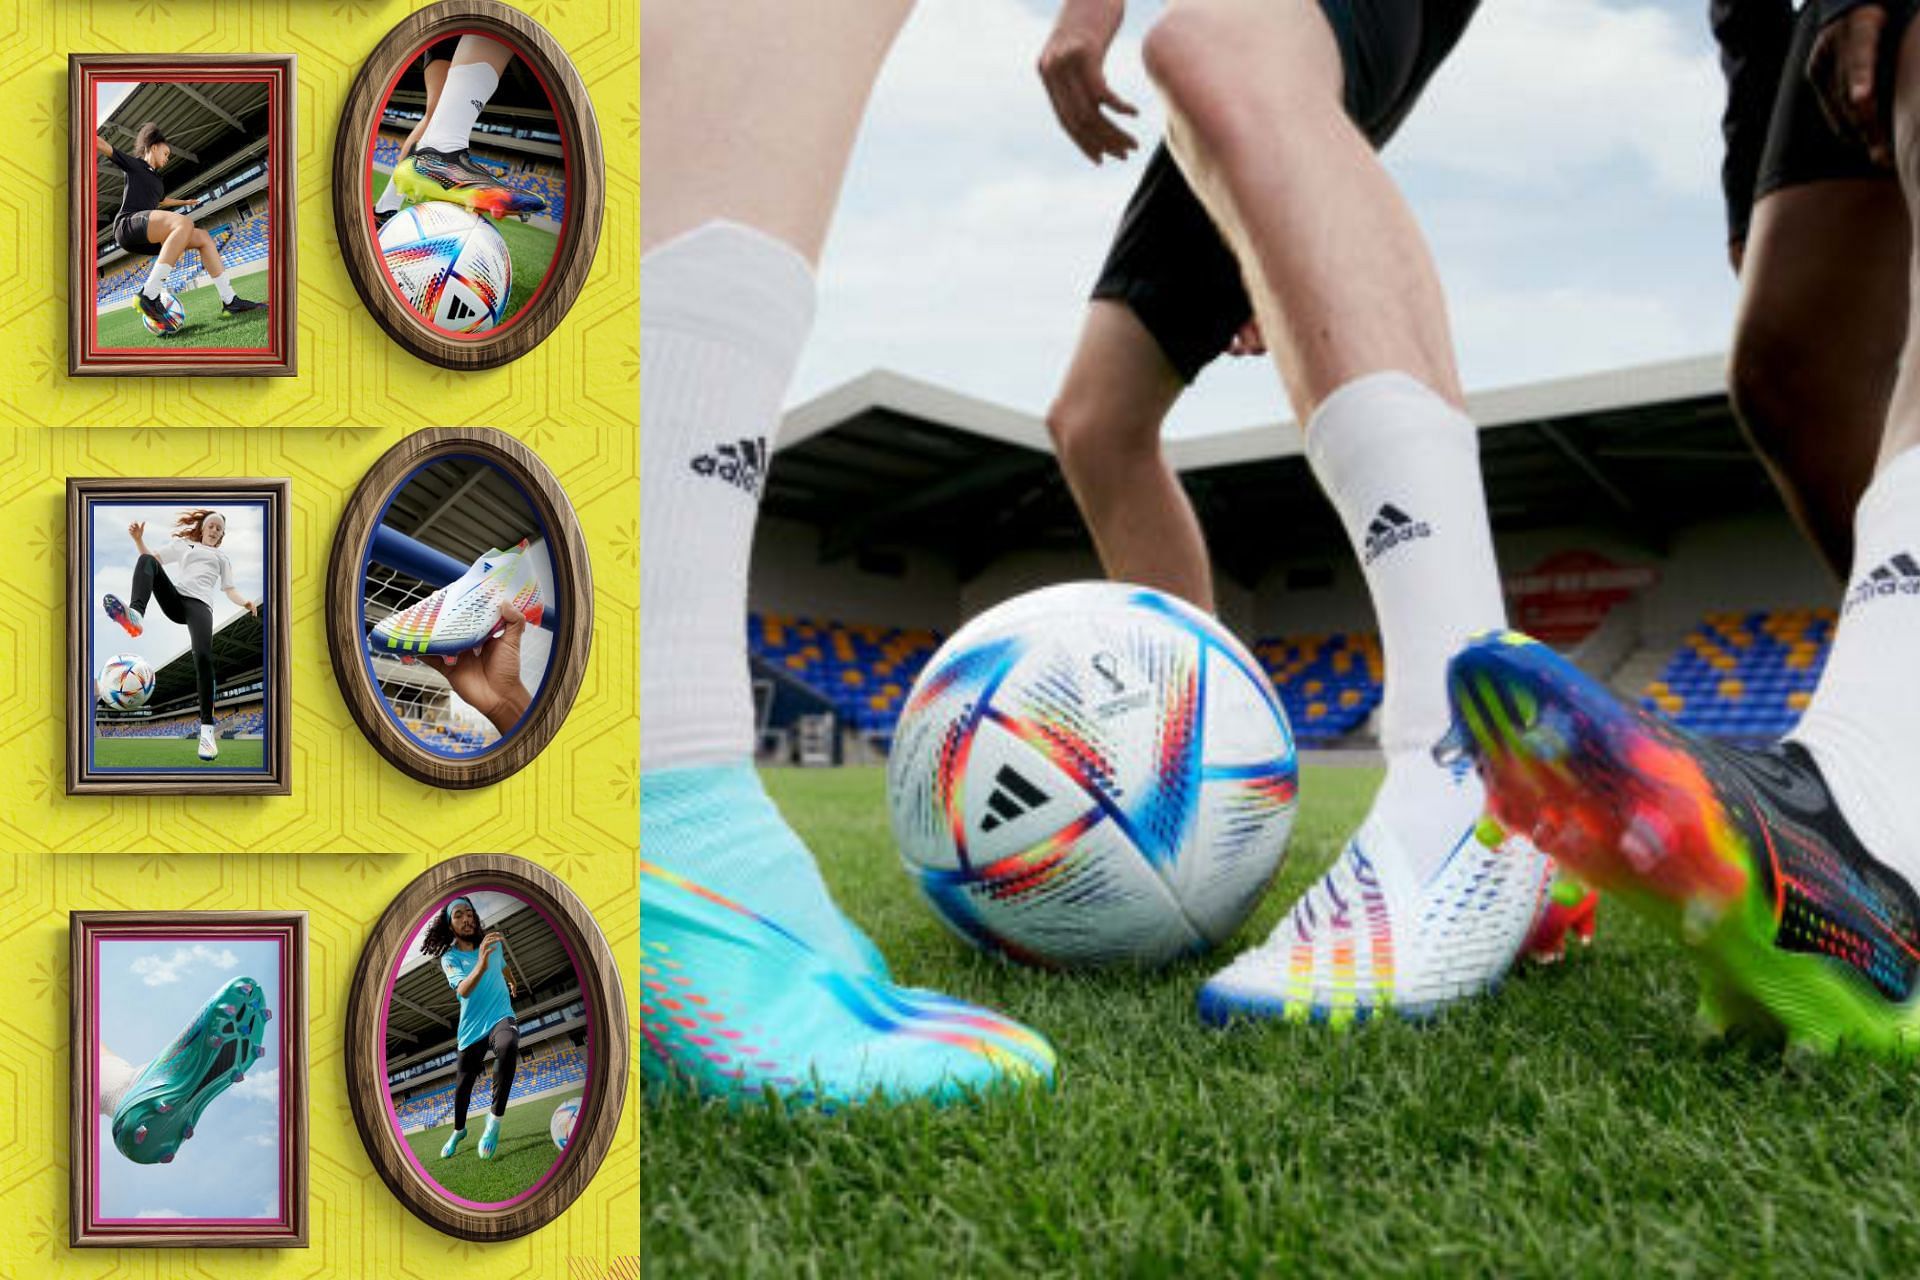 Adidas Al Rihla 2022 FIFA World Cup boot collection (Image via Sportskeeda)